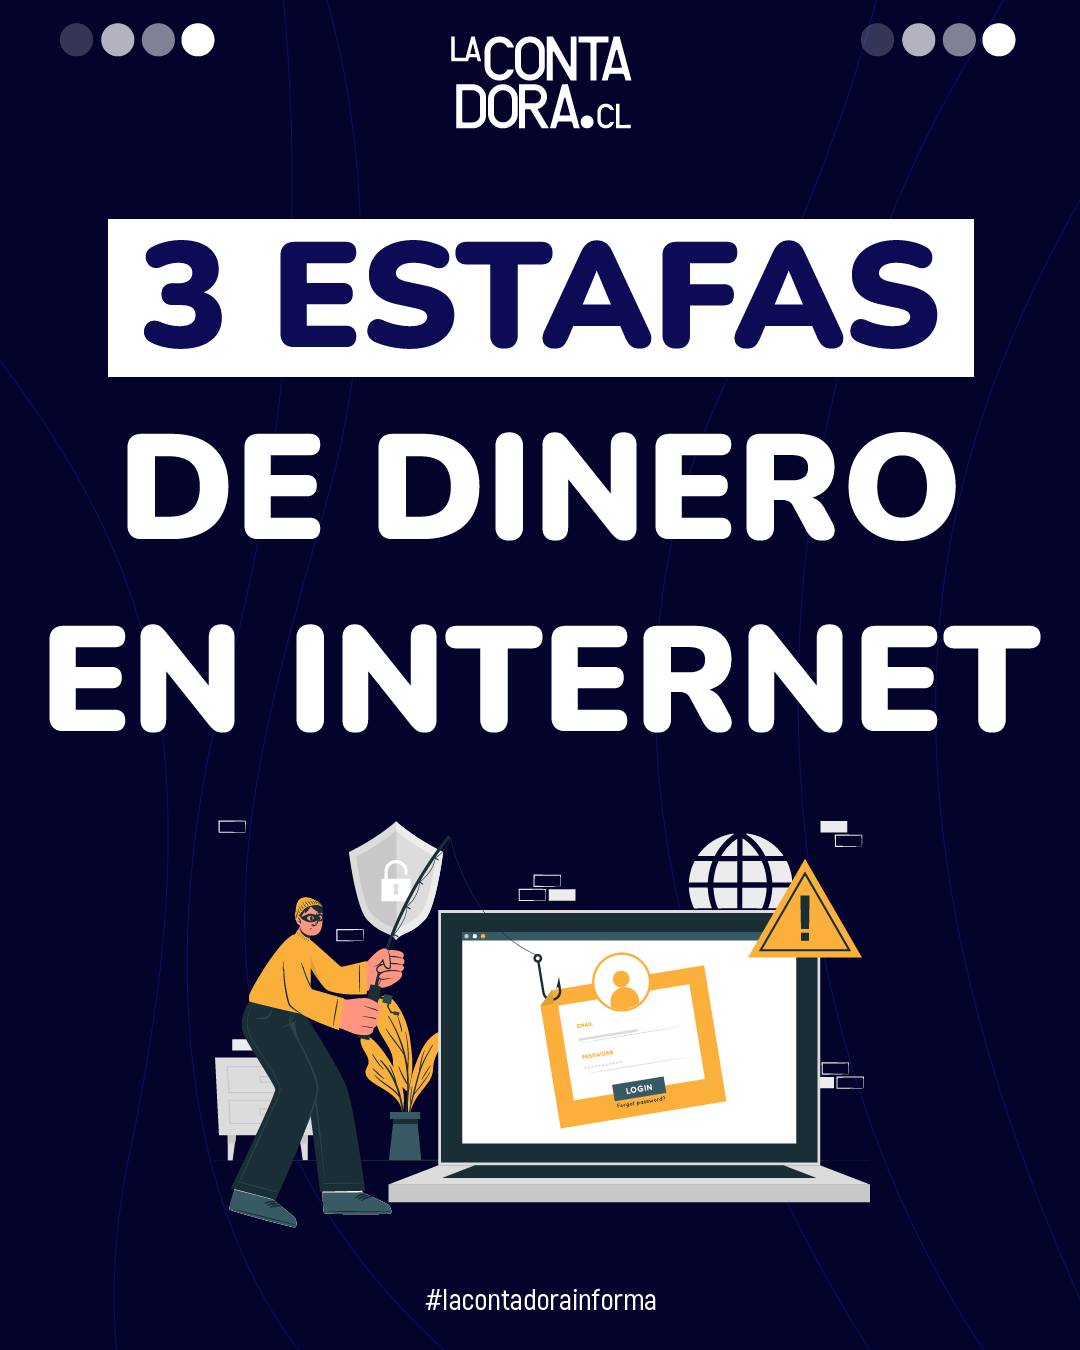 3 ESTAFAS DE DINERO EN INTERNET